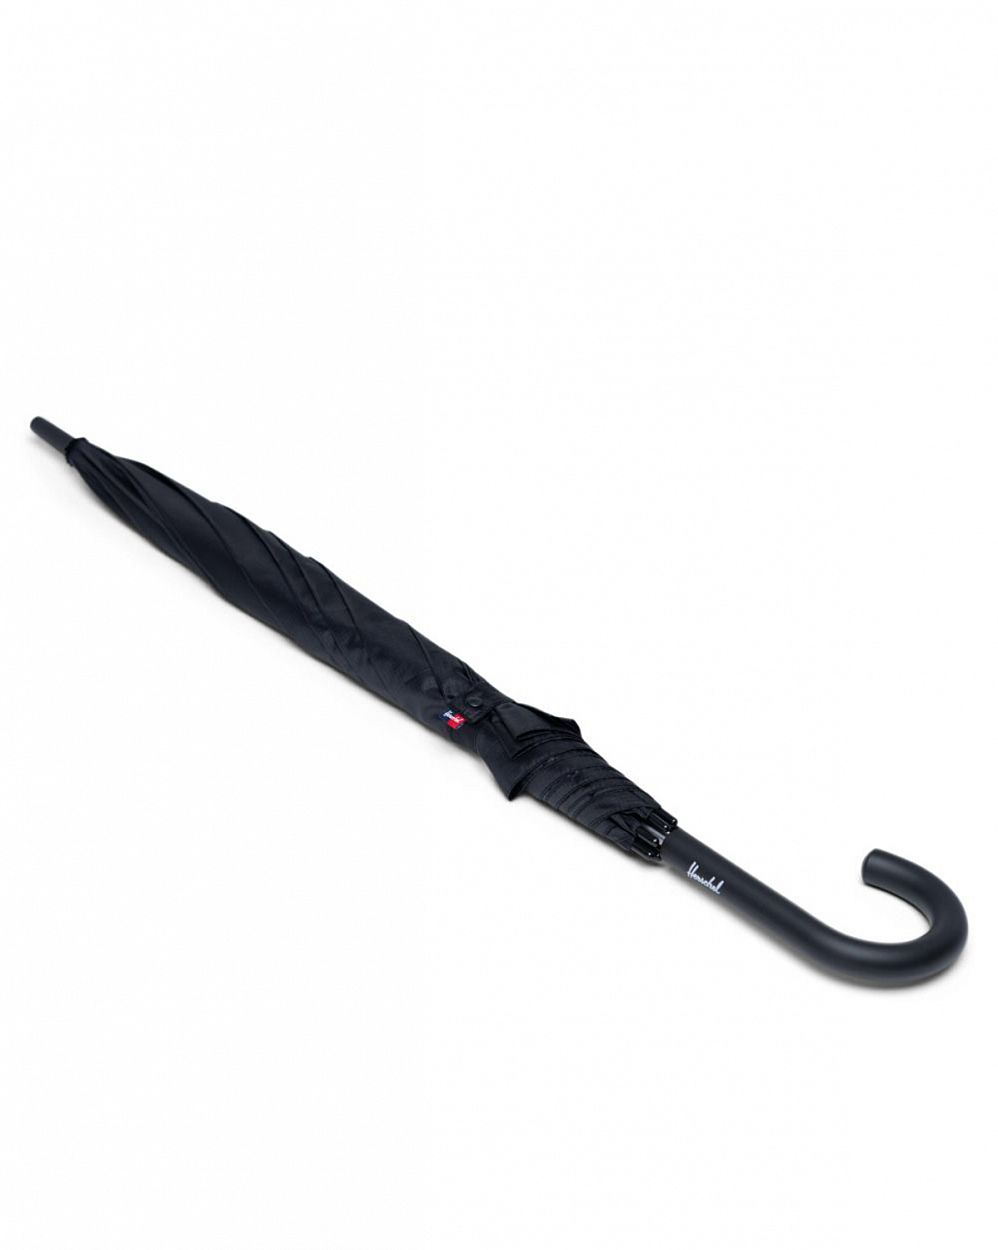 Зонт классический облегченный крючок-ручка Herschel Supply Co Single Stage Black отзывы